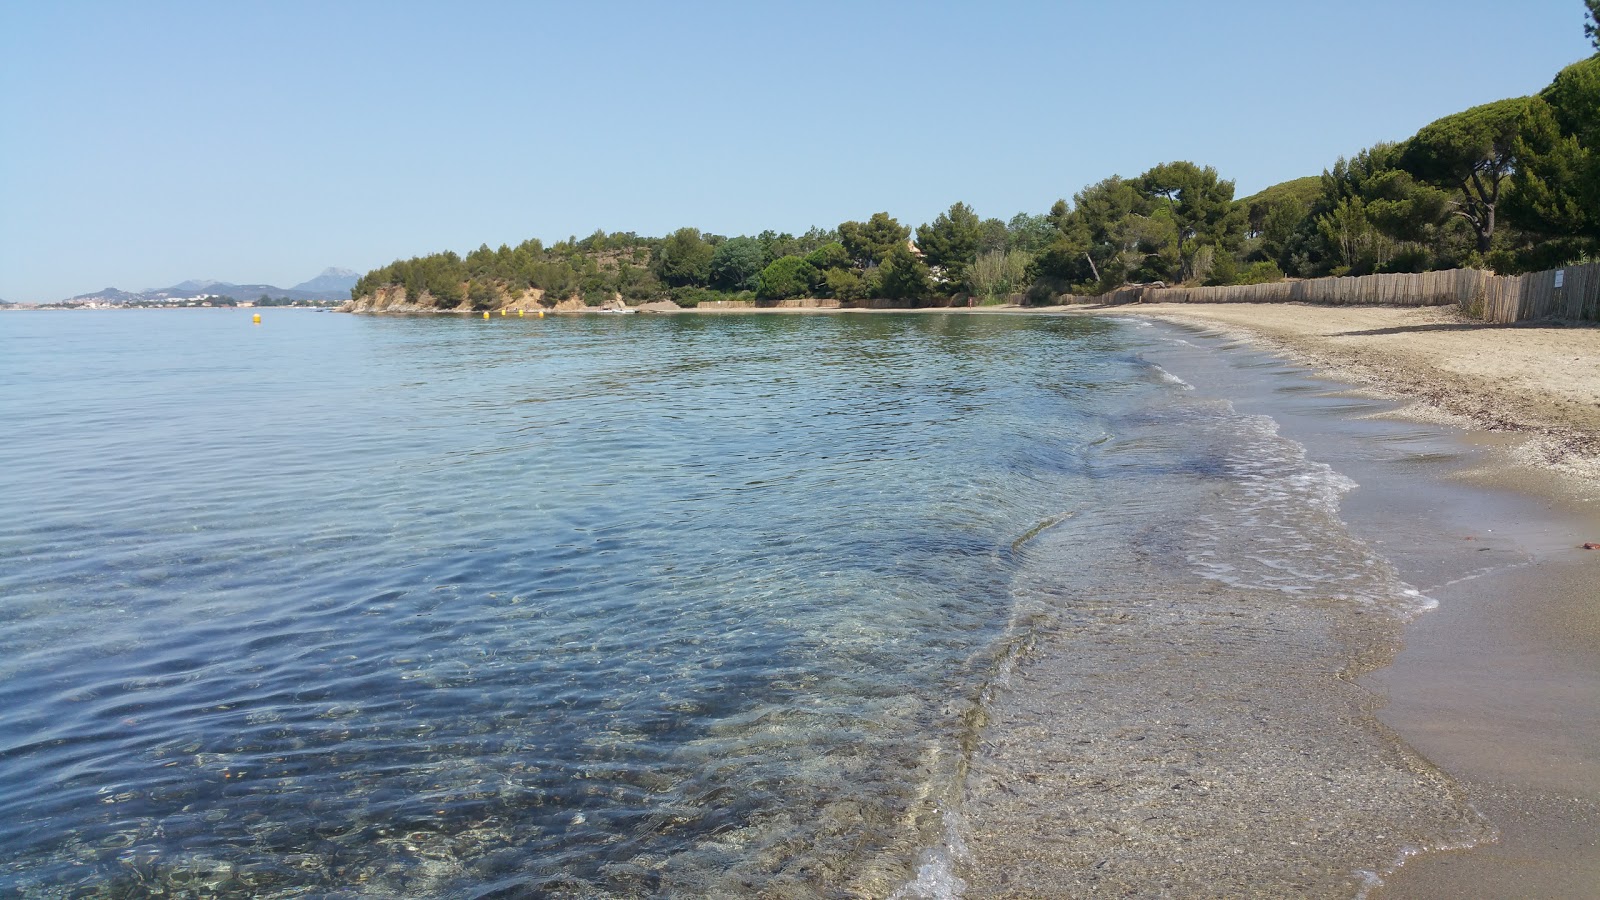 Fotografie cu Leoube beach cu o suprafață de apa pură turcoaz